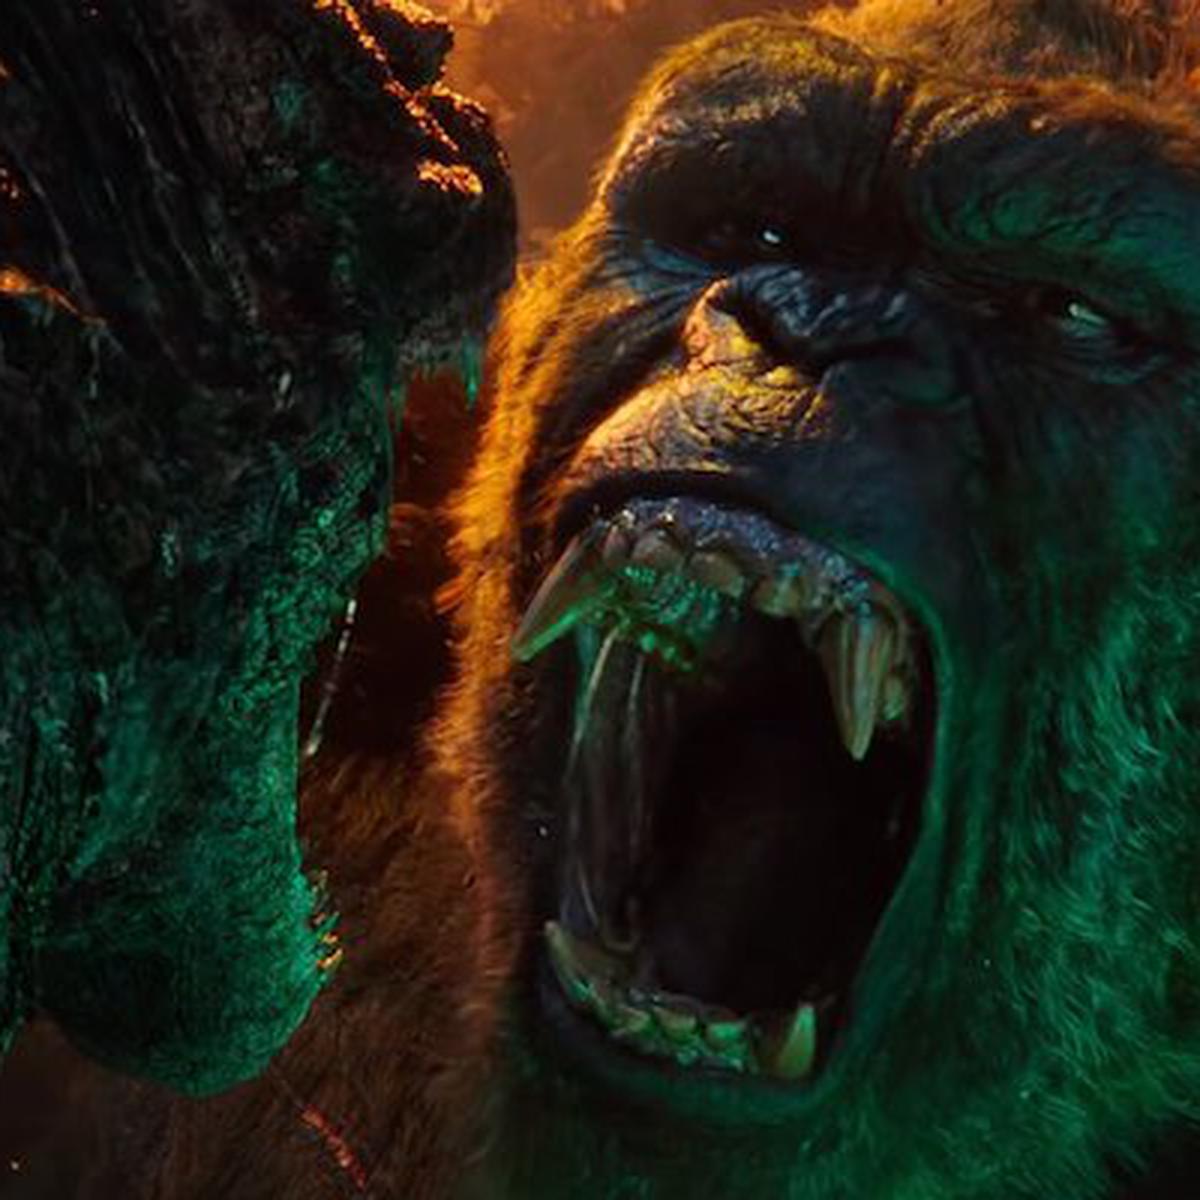 Godzilla vs Kong: rankeamos de peor a mejor todas las películas